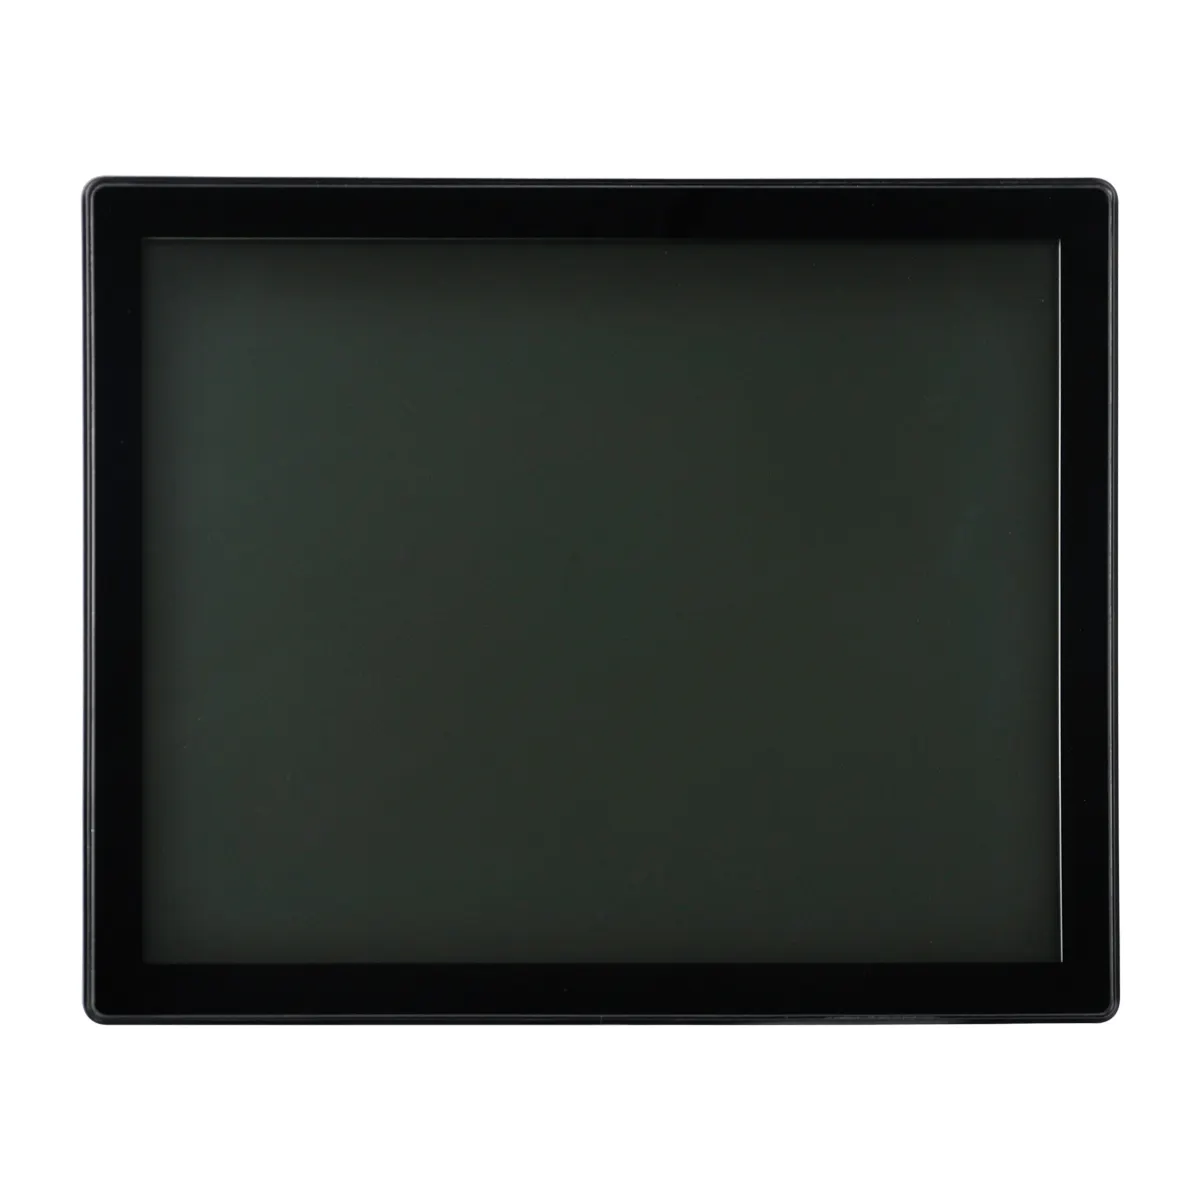 19 인치 LCD 모니터 방수 반달 방지 오픈 프레임 Pcap TFT 디스플레이 터치 스크린 모니터